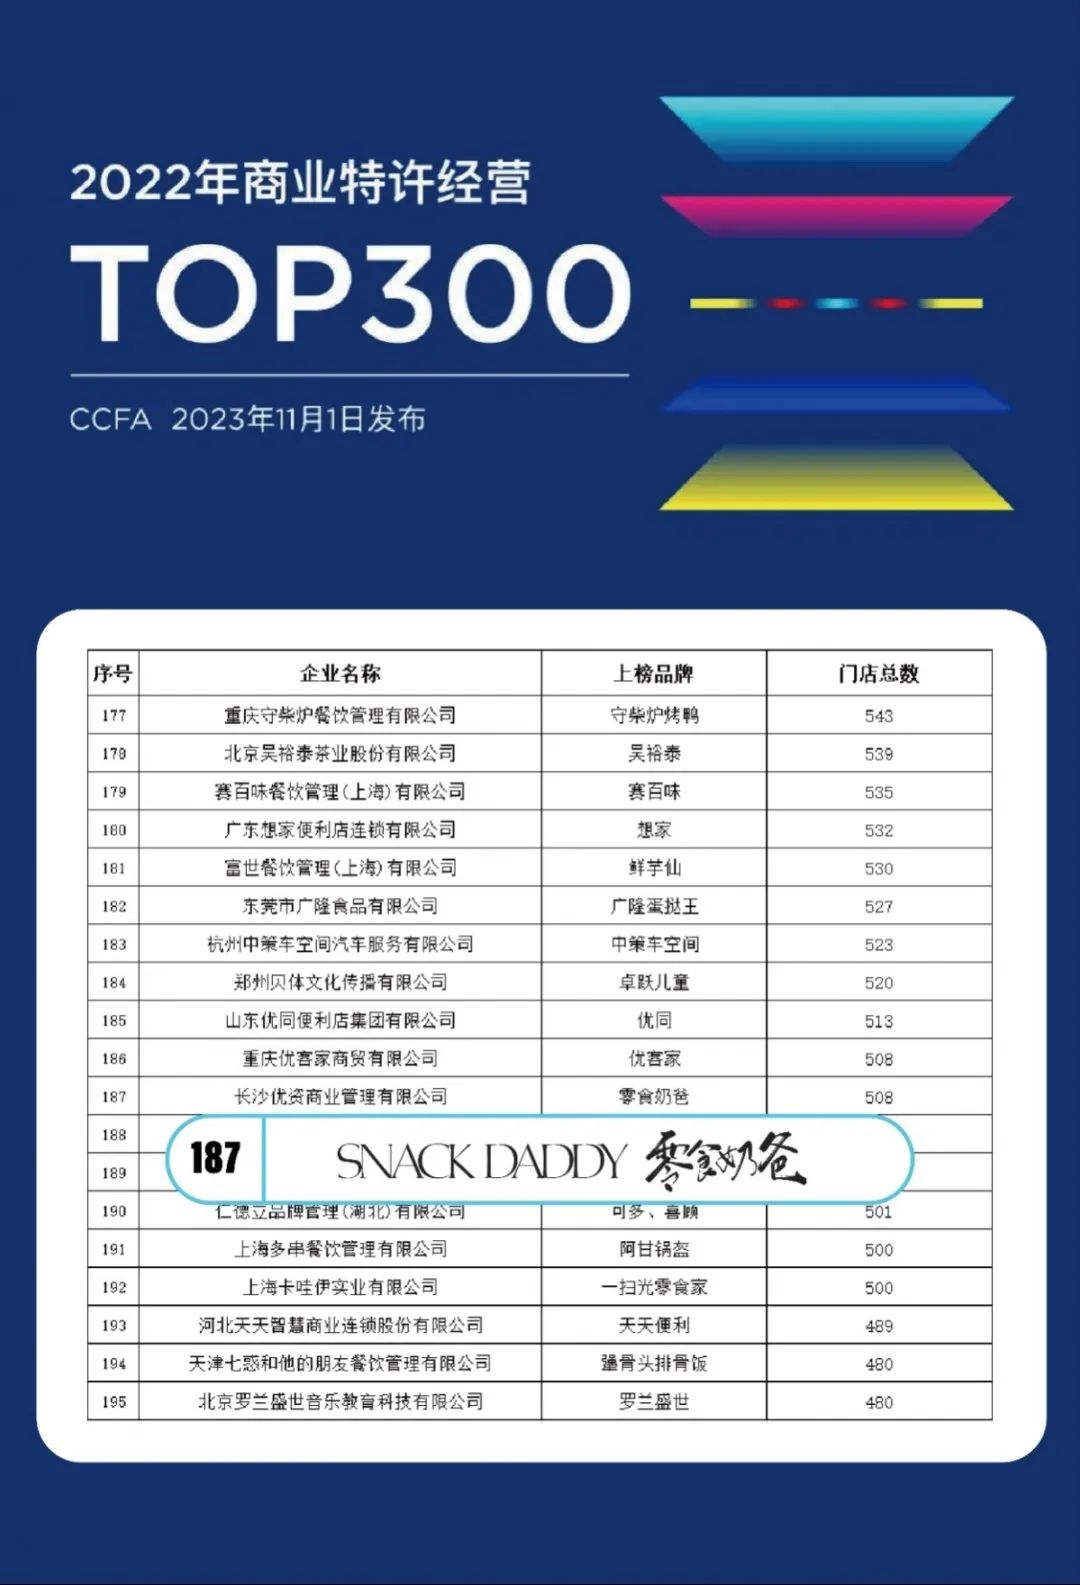 喜讯丨零食奶爸荣登《2022商业特许经营TOP300》